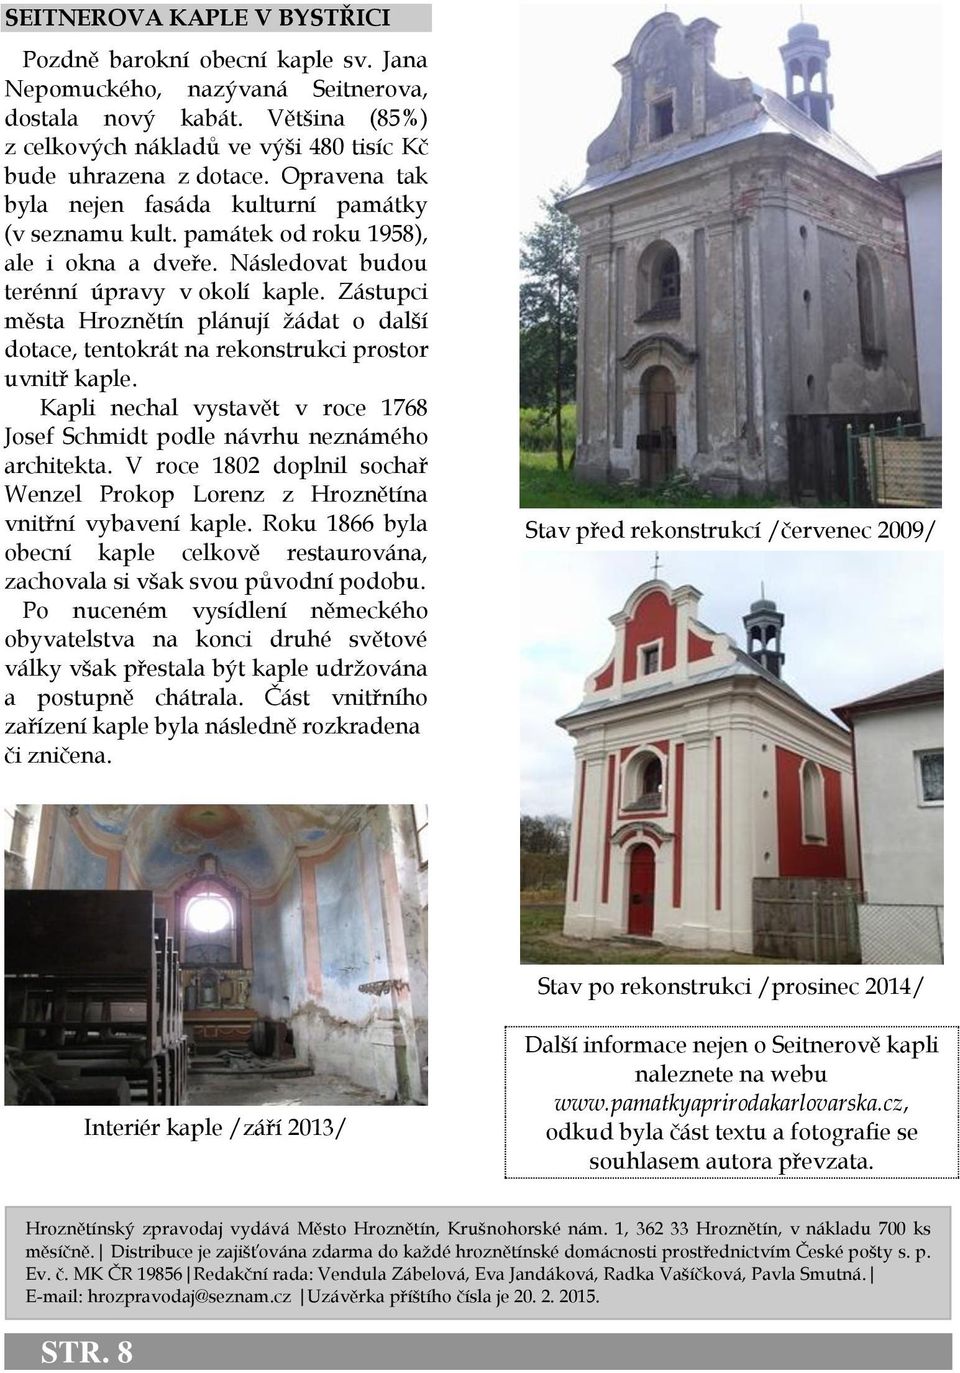 Zástupci města Hroznětín plánují žádat o další dotace, tentokrát na rekonstrukci prostor uvnitř kaple. Kapli nechal vystavět v roce 1768 Josef Schmidt podle návrhu neznámého architekta.